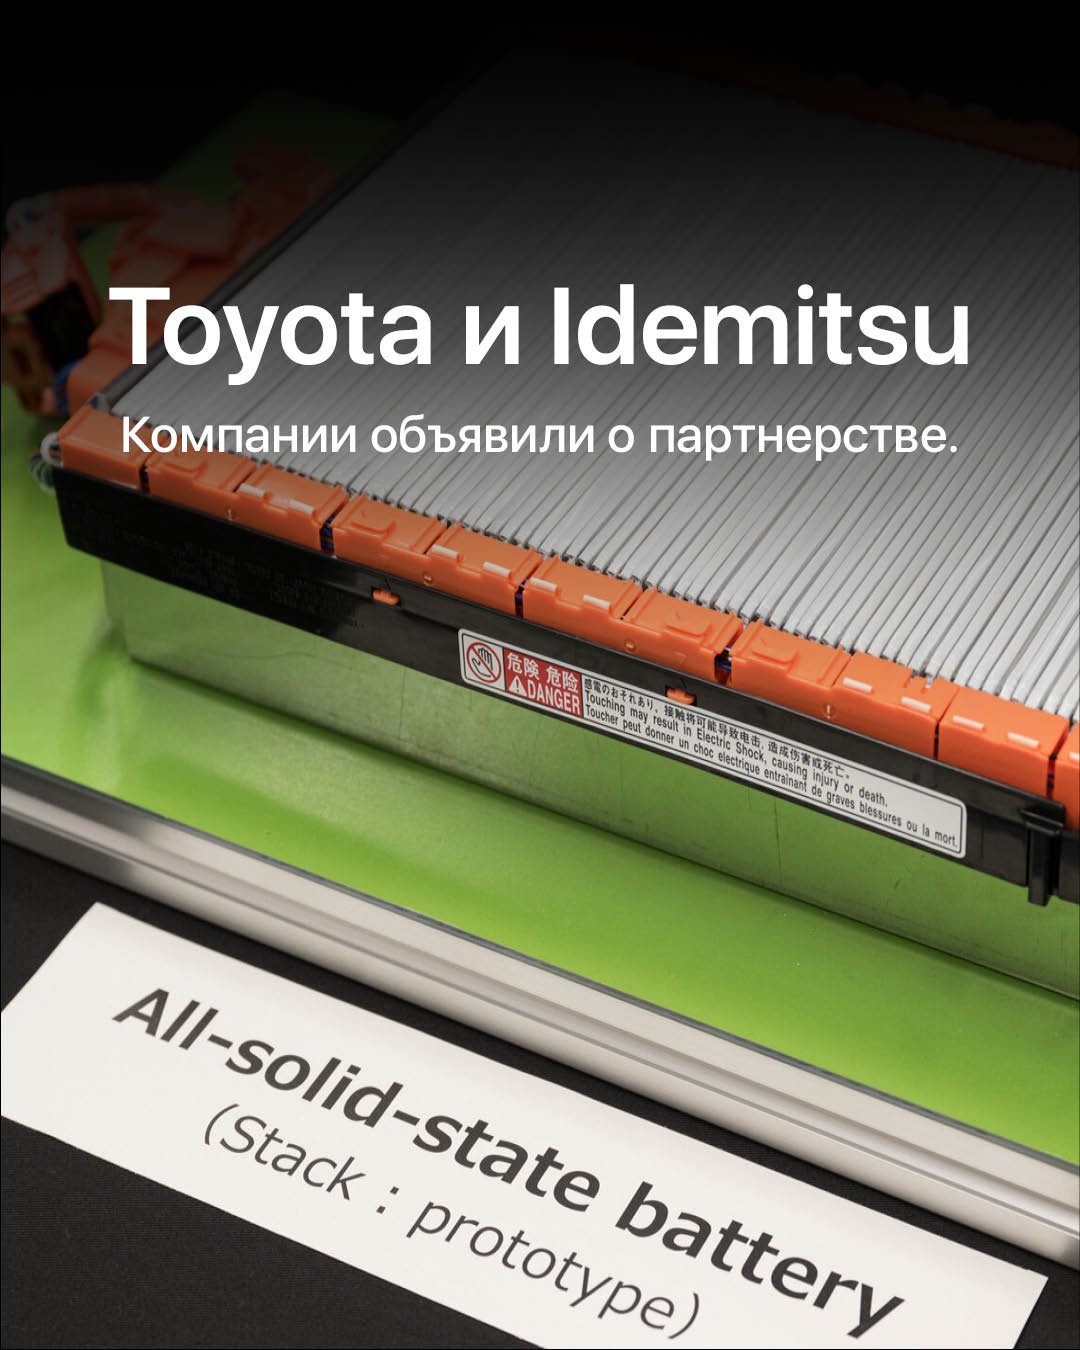 Японские компании Toyota Motor и Idemitsu Kosan объявили о сотрудничестве в разработке твердотельных батарей.